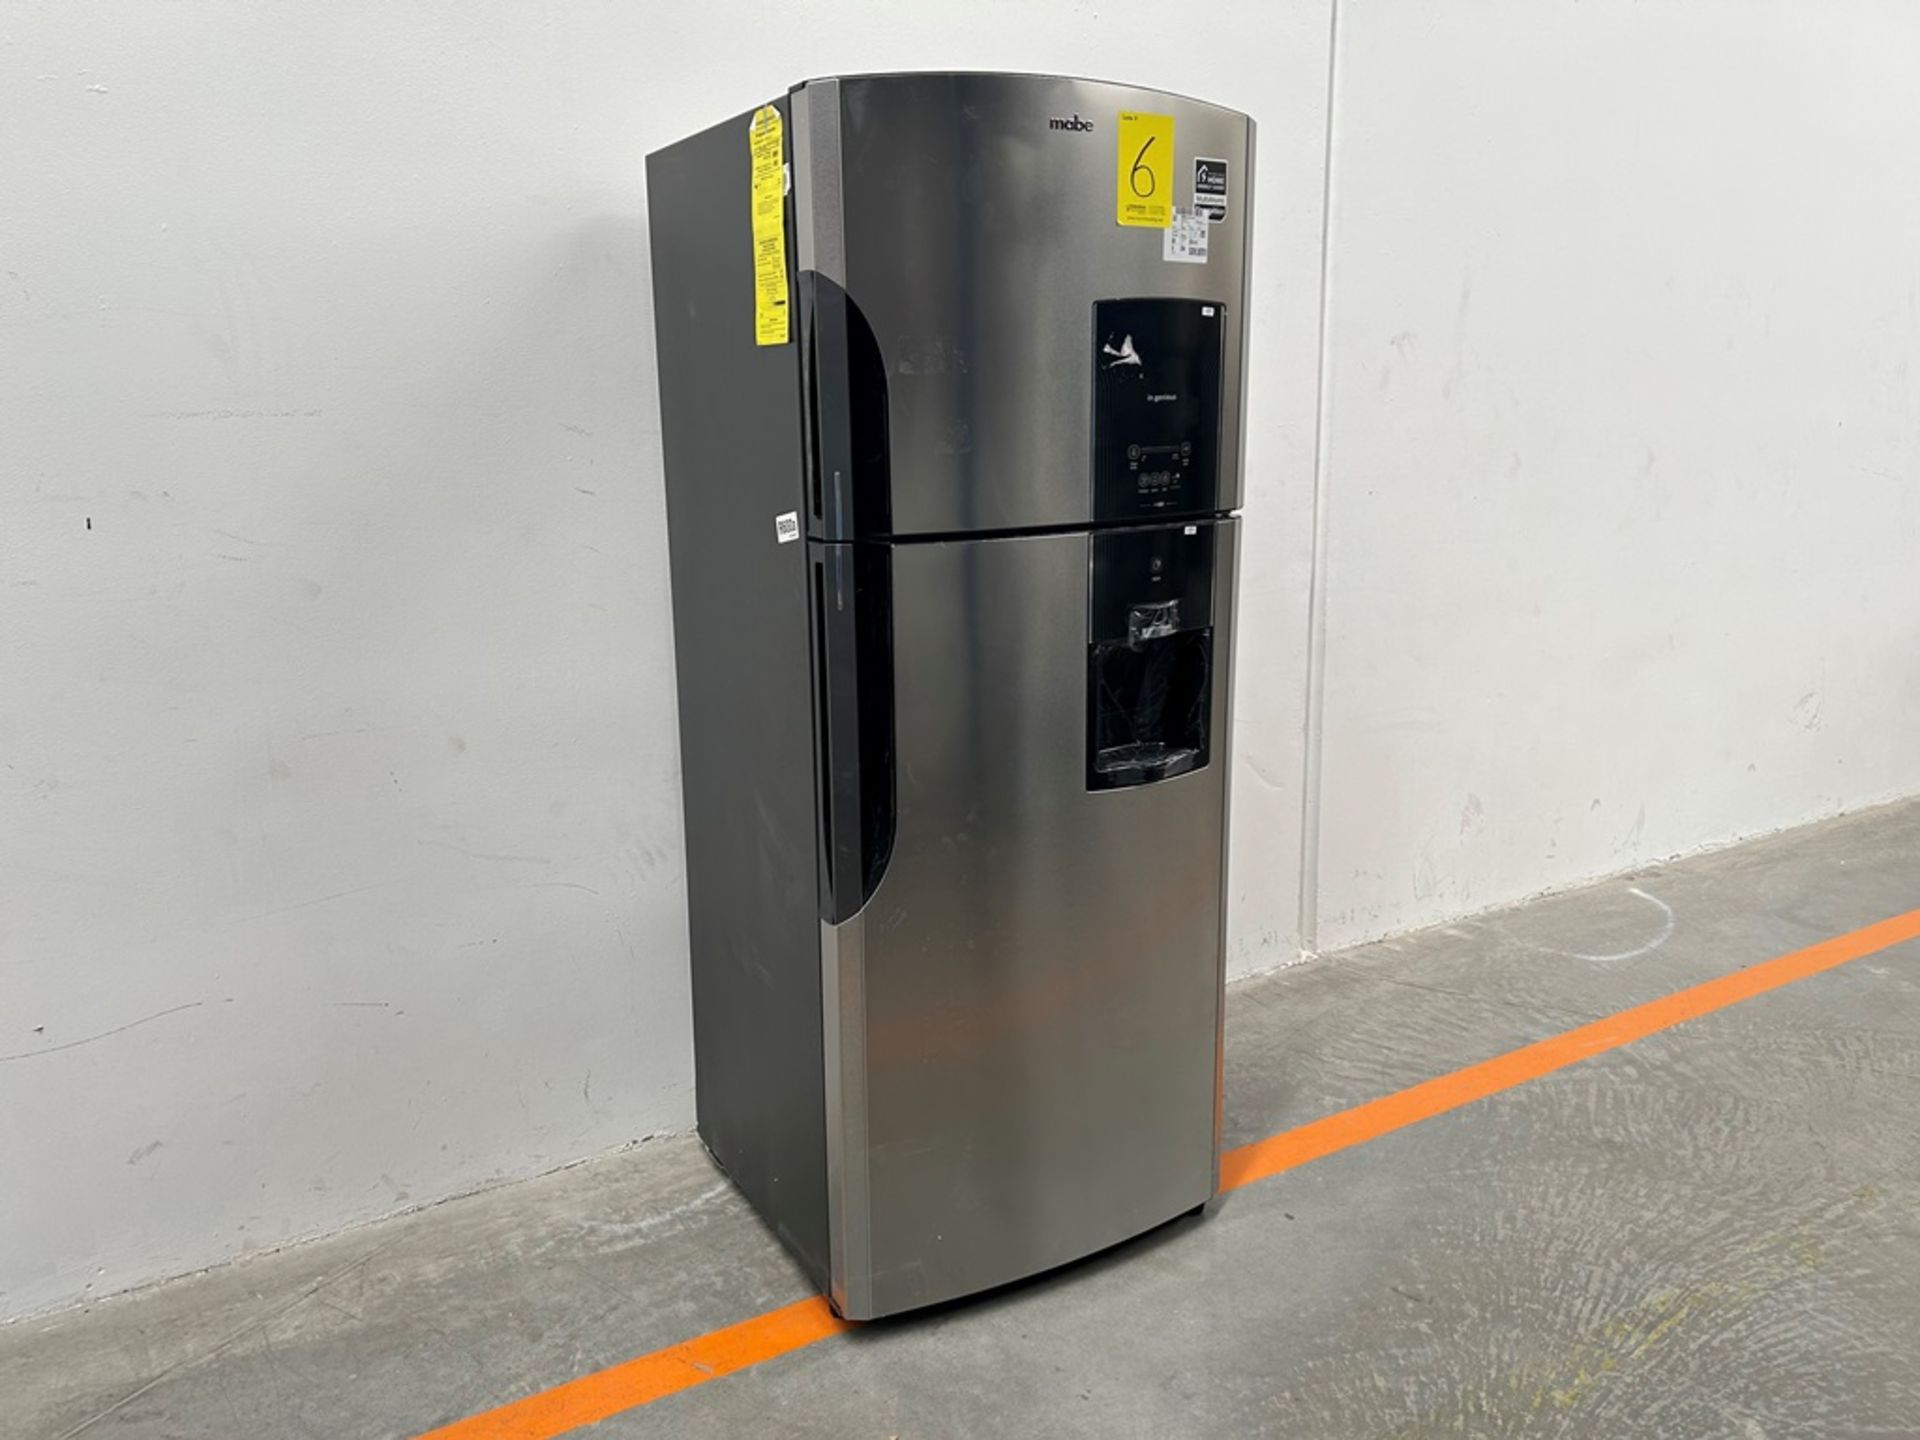 (NUEVO) Refrigerador con dispensador de agua Marca MABE, Modelo RMS510IBMRXA, Serie 04327, Color GR - Image 2 of 11